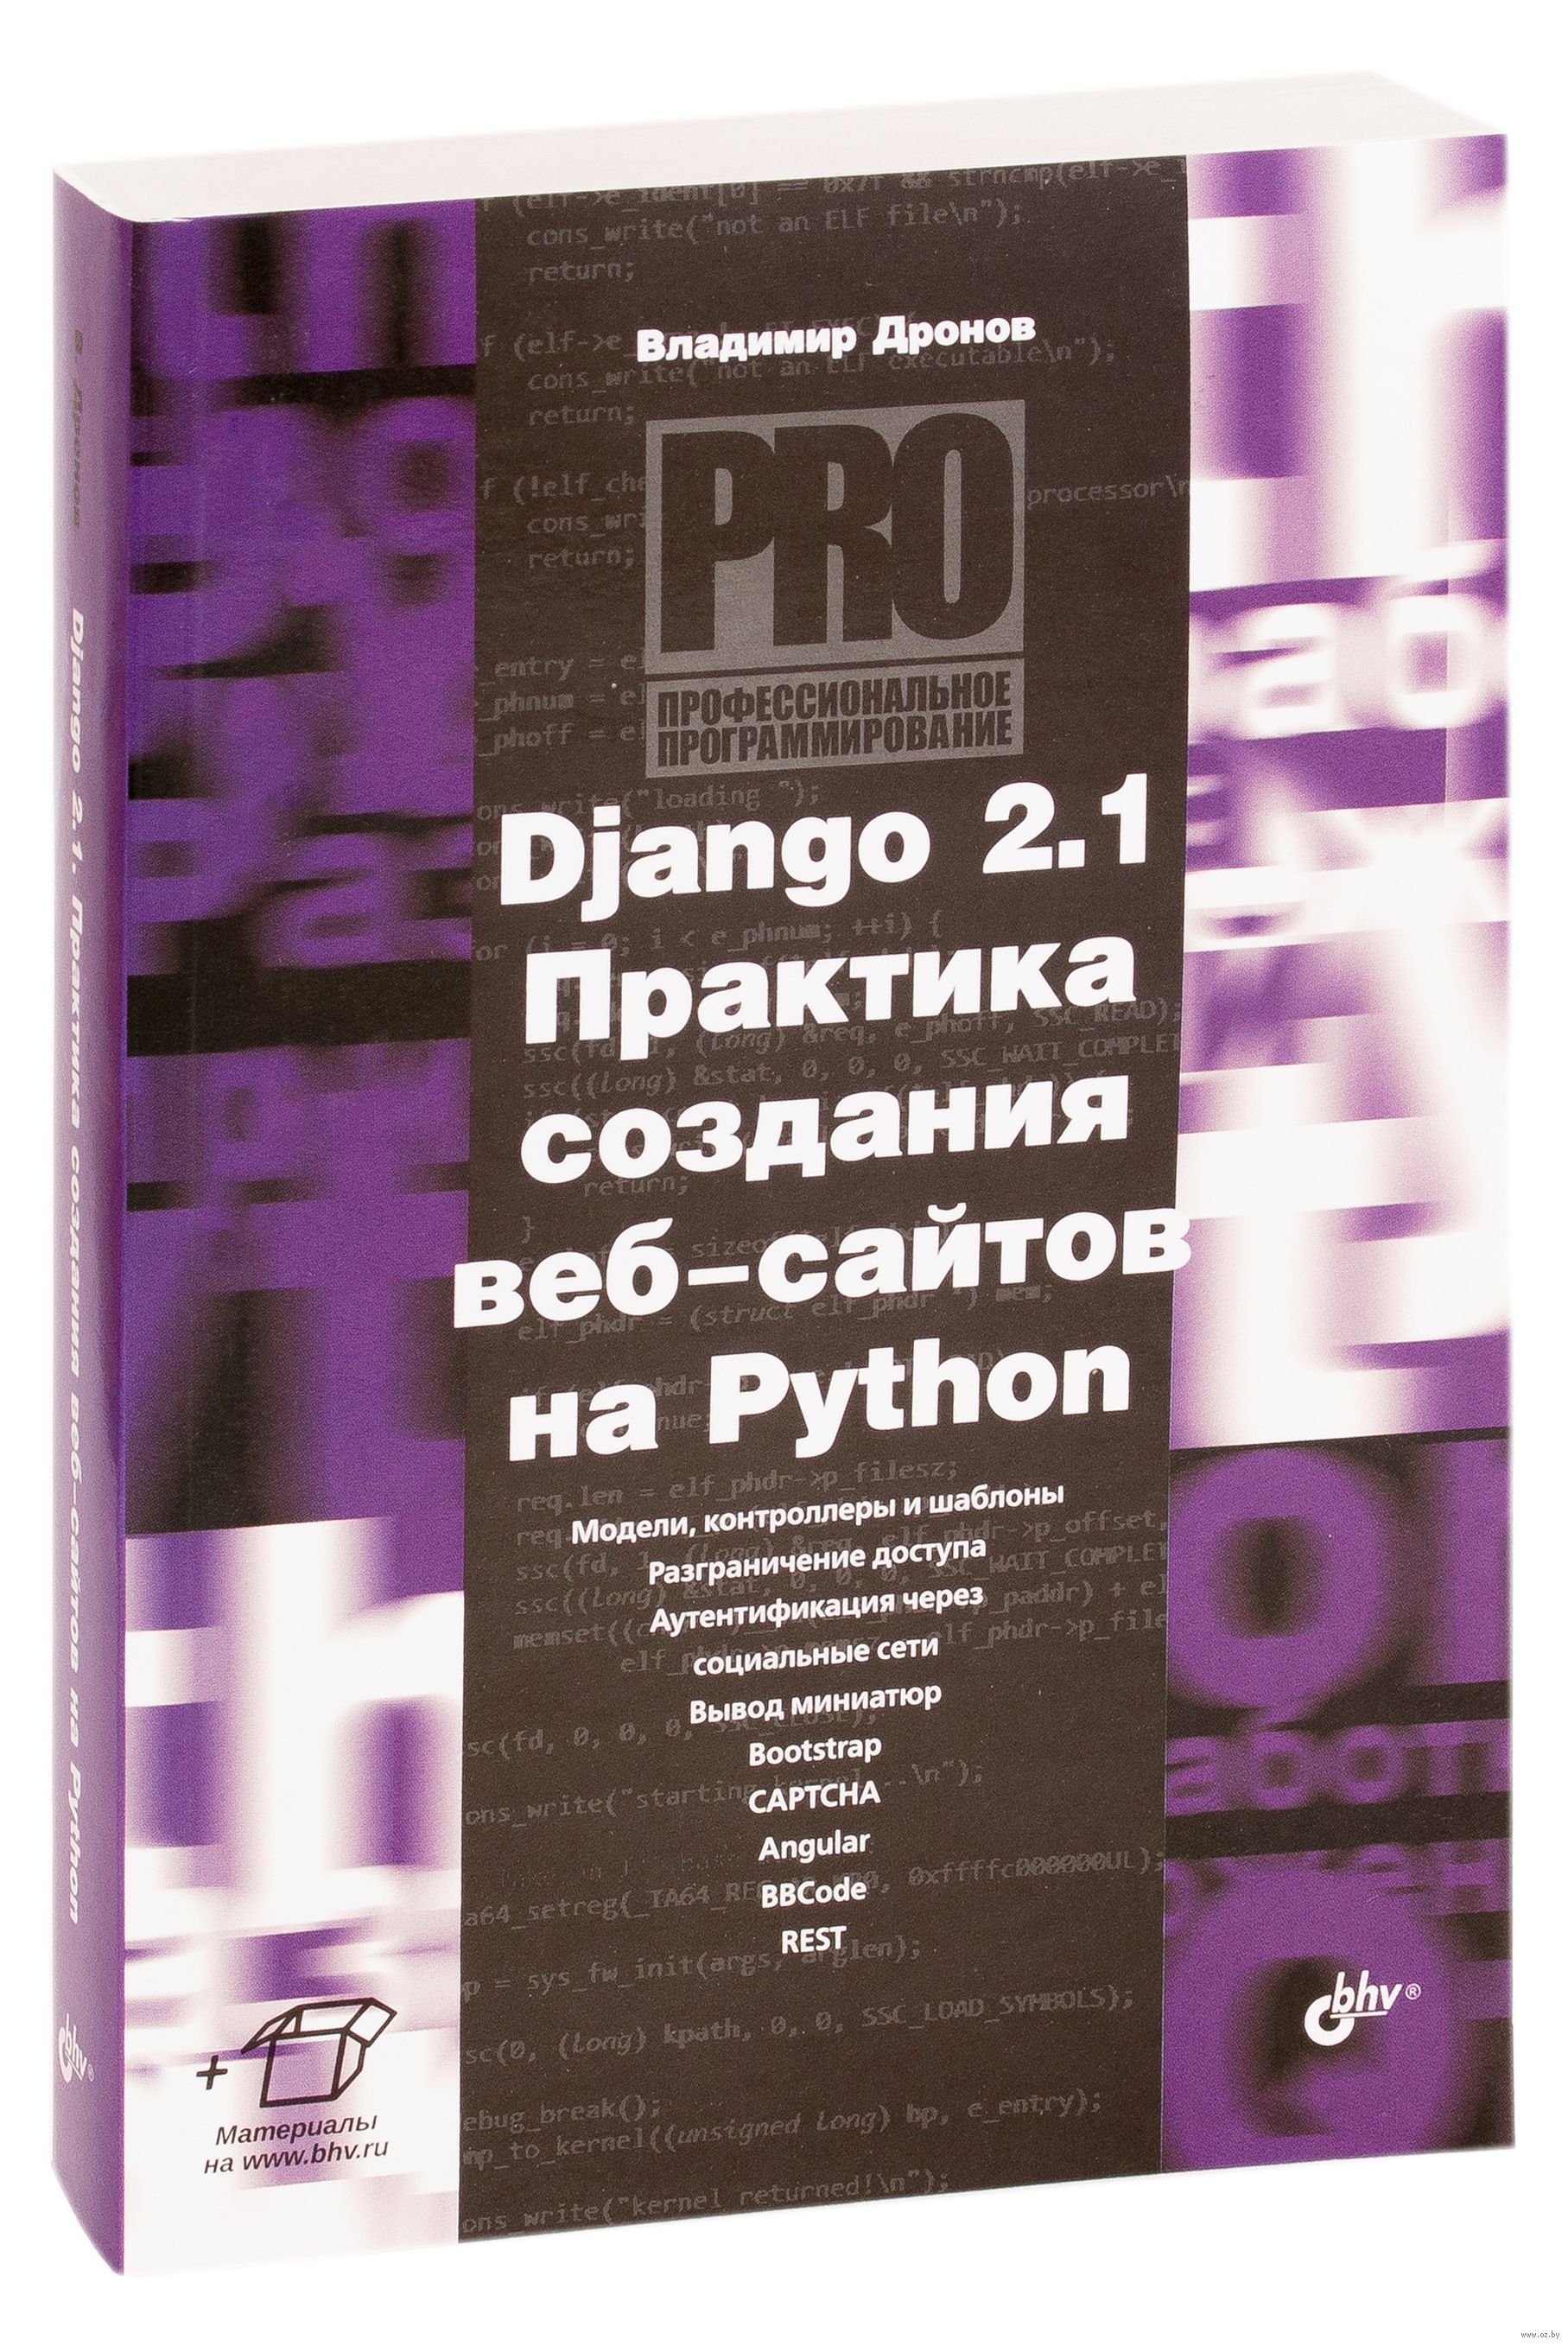 Python купить книгу. Django практика создания web-сайтов на Python. Django 2.1 практика создания веб-сайтов на Python.